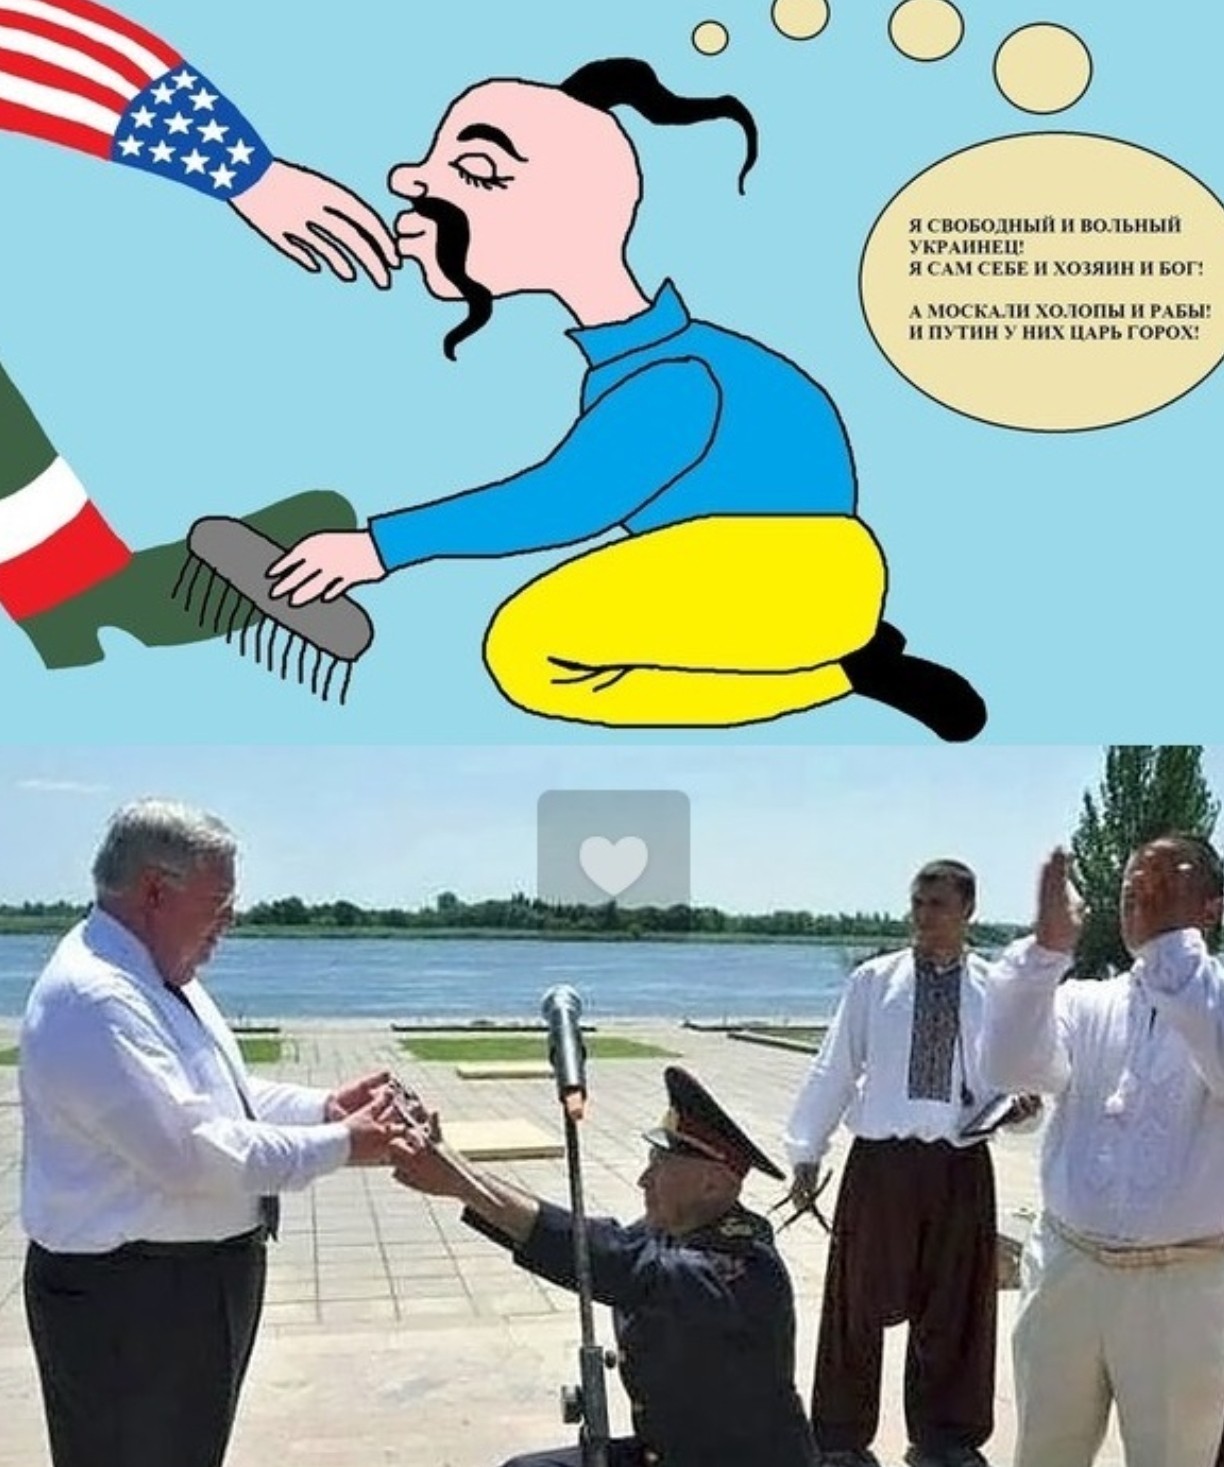 Каждый украинец. Хохлы в США. Смешные украинцы. Карикатуры на украинцев. Карикатуры на Америку и Украину.